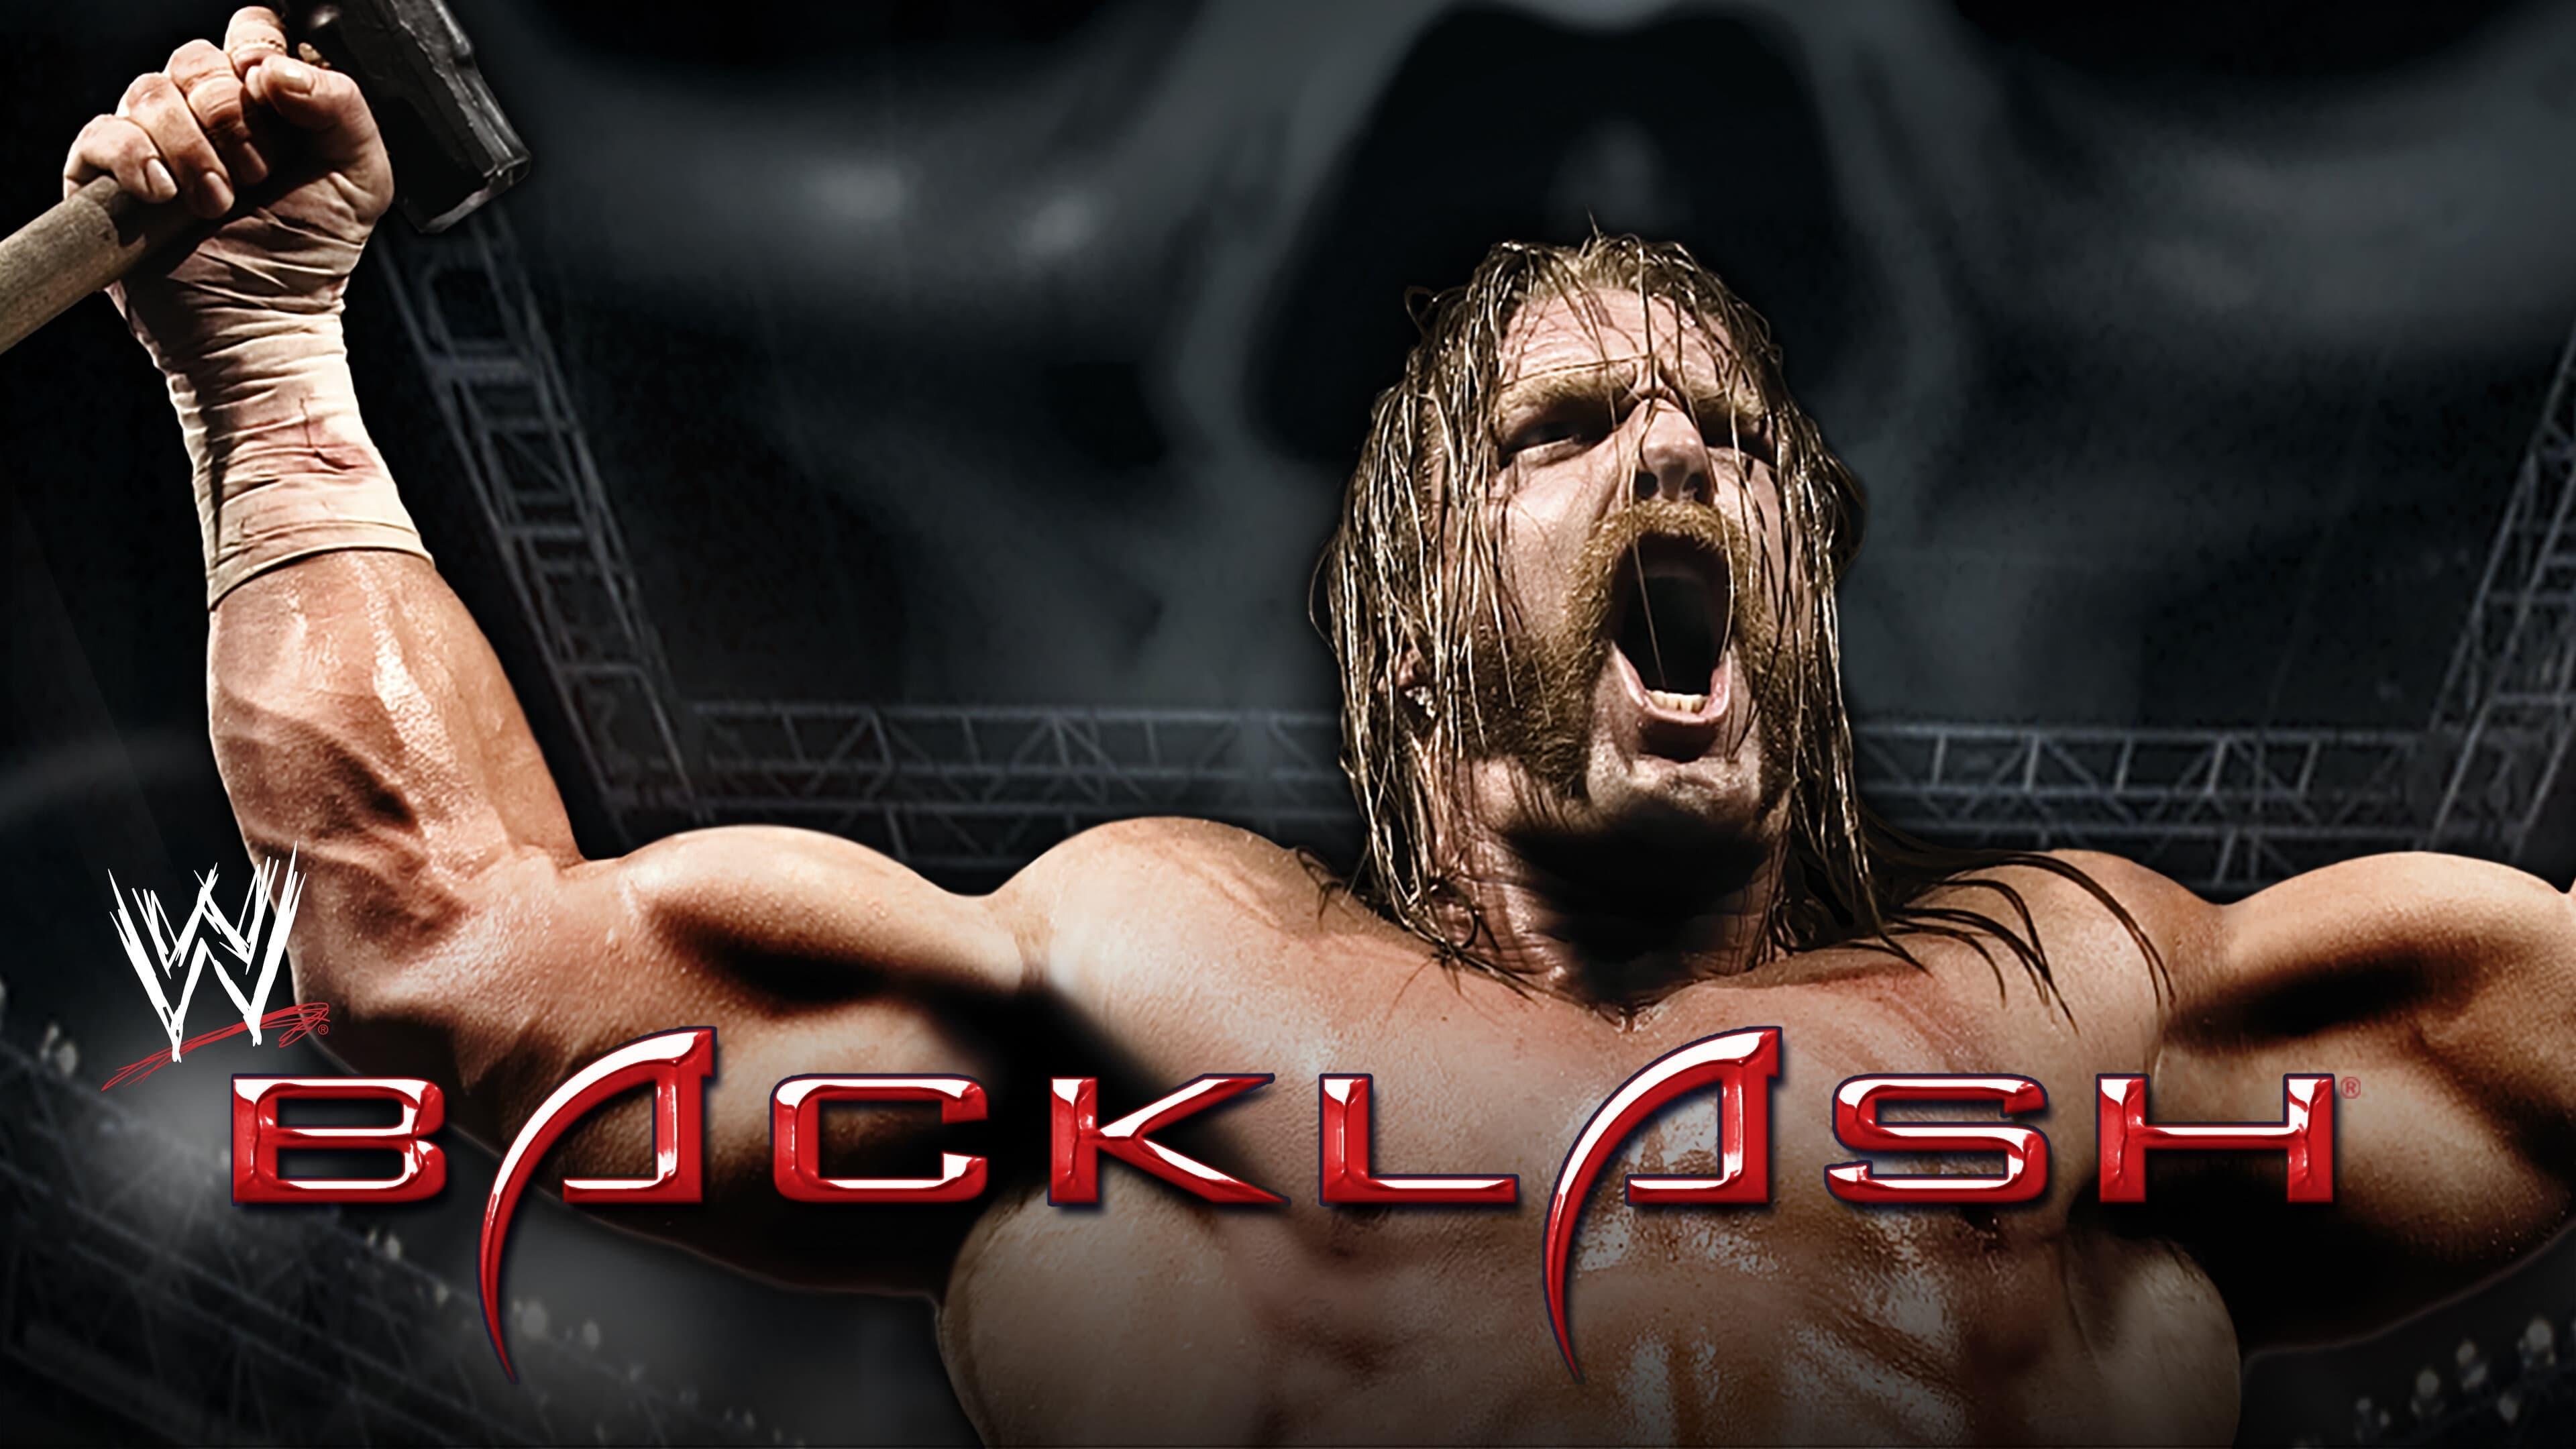 WWE Backlash 2006 backdrop